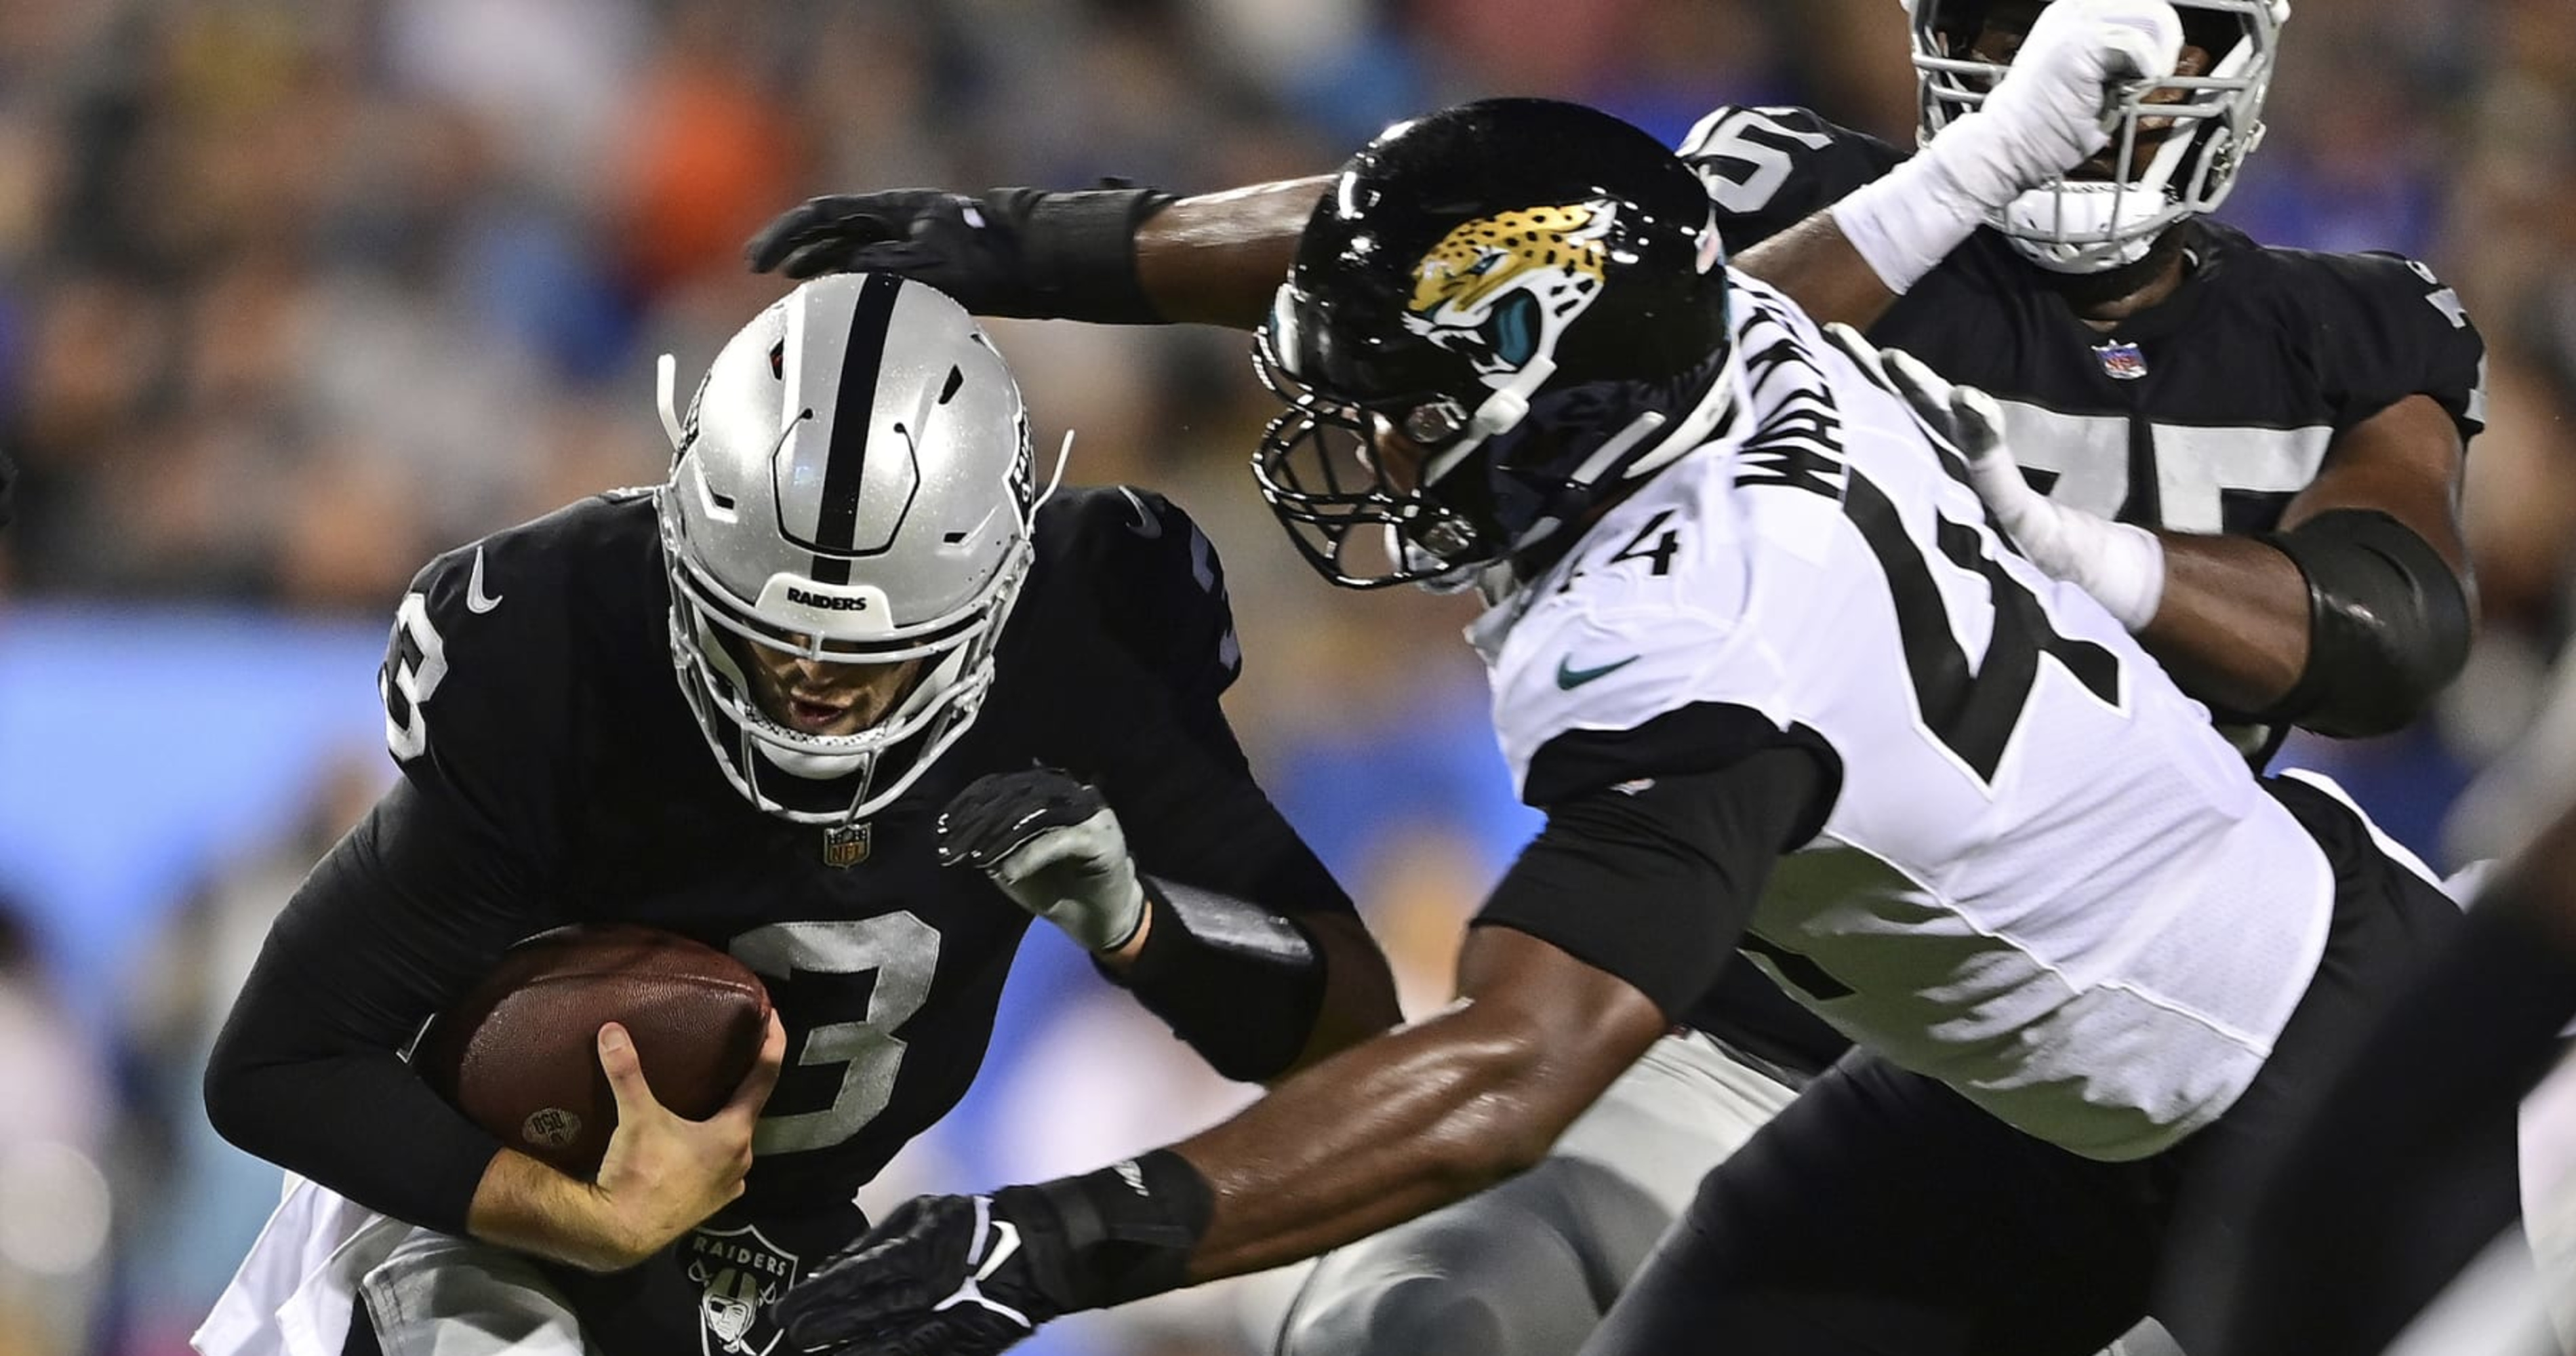 Raiders win NFL preseason opener, Jaguars' No. 1 pick Walker logs sack 